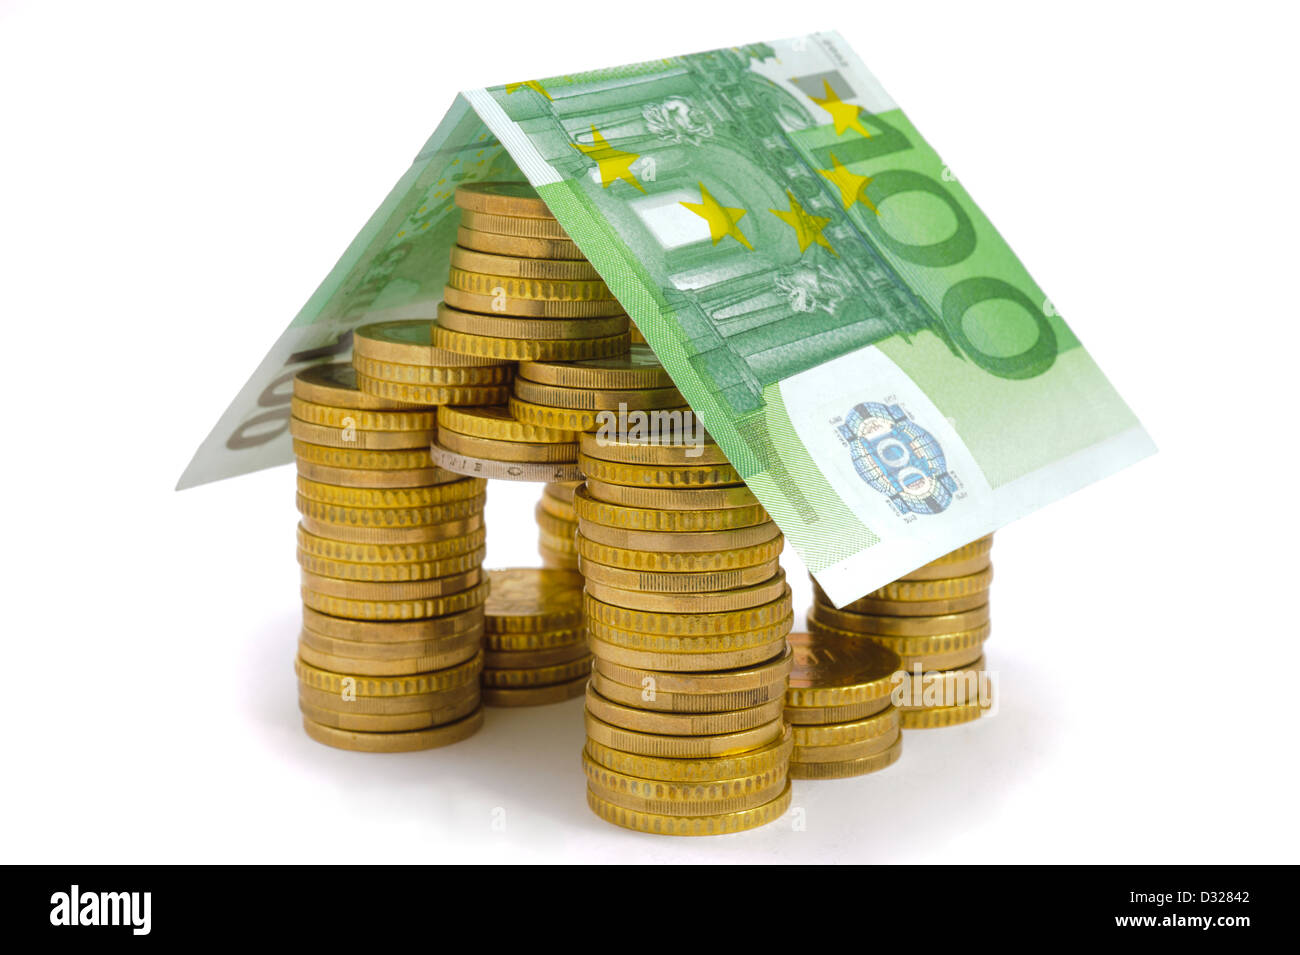 Modello di casa costruita con le monete in euro e la banconota come simbolo per finanziare o immobili Foto Stock